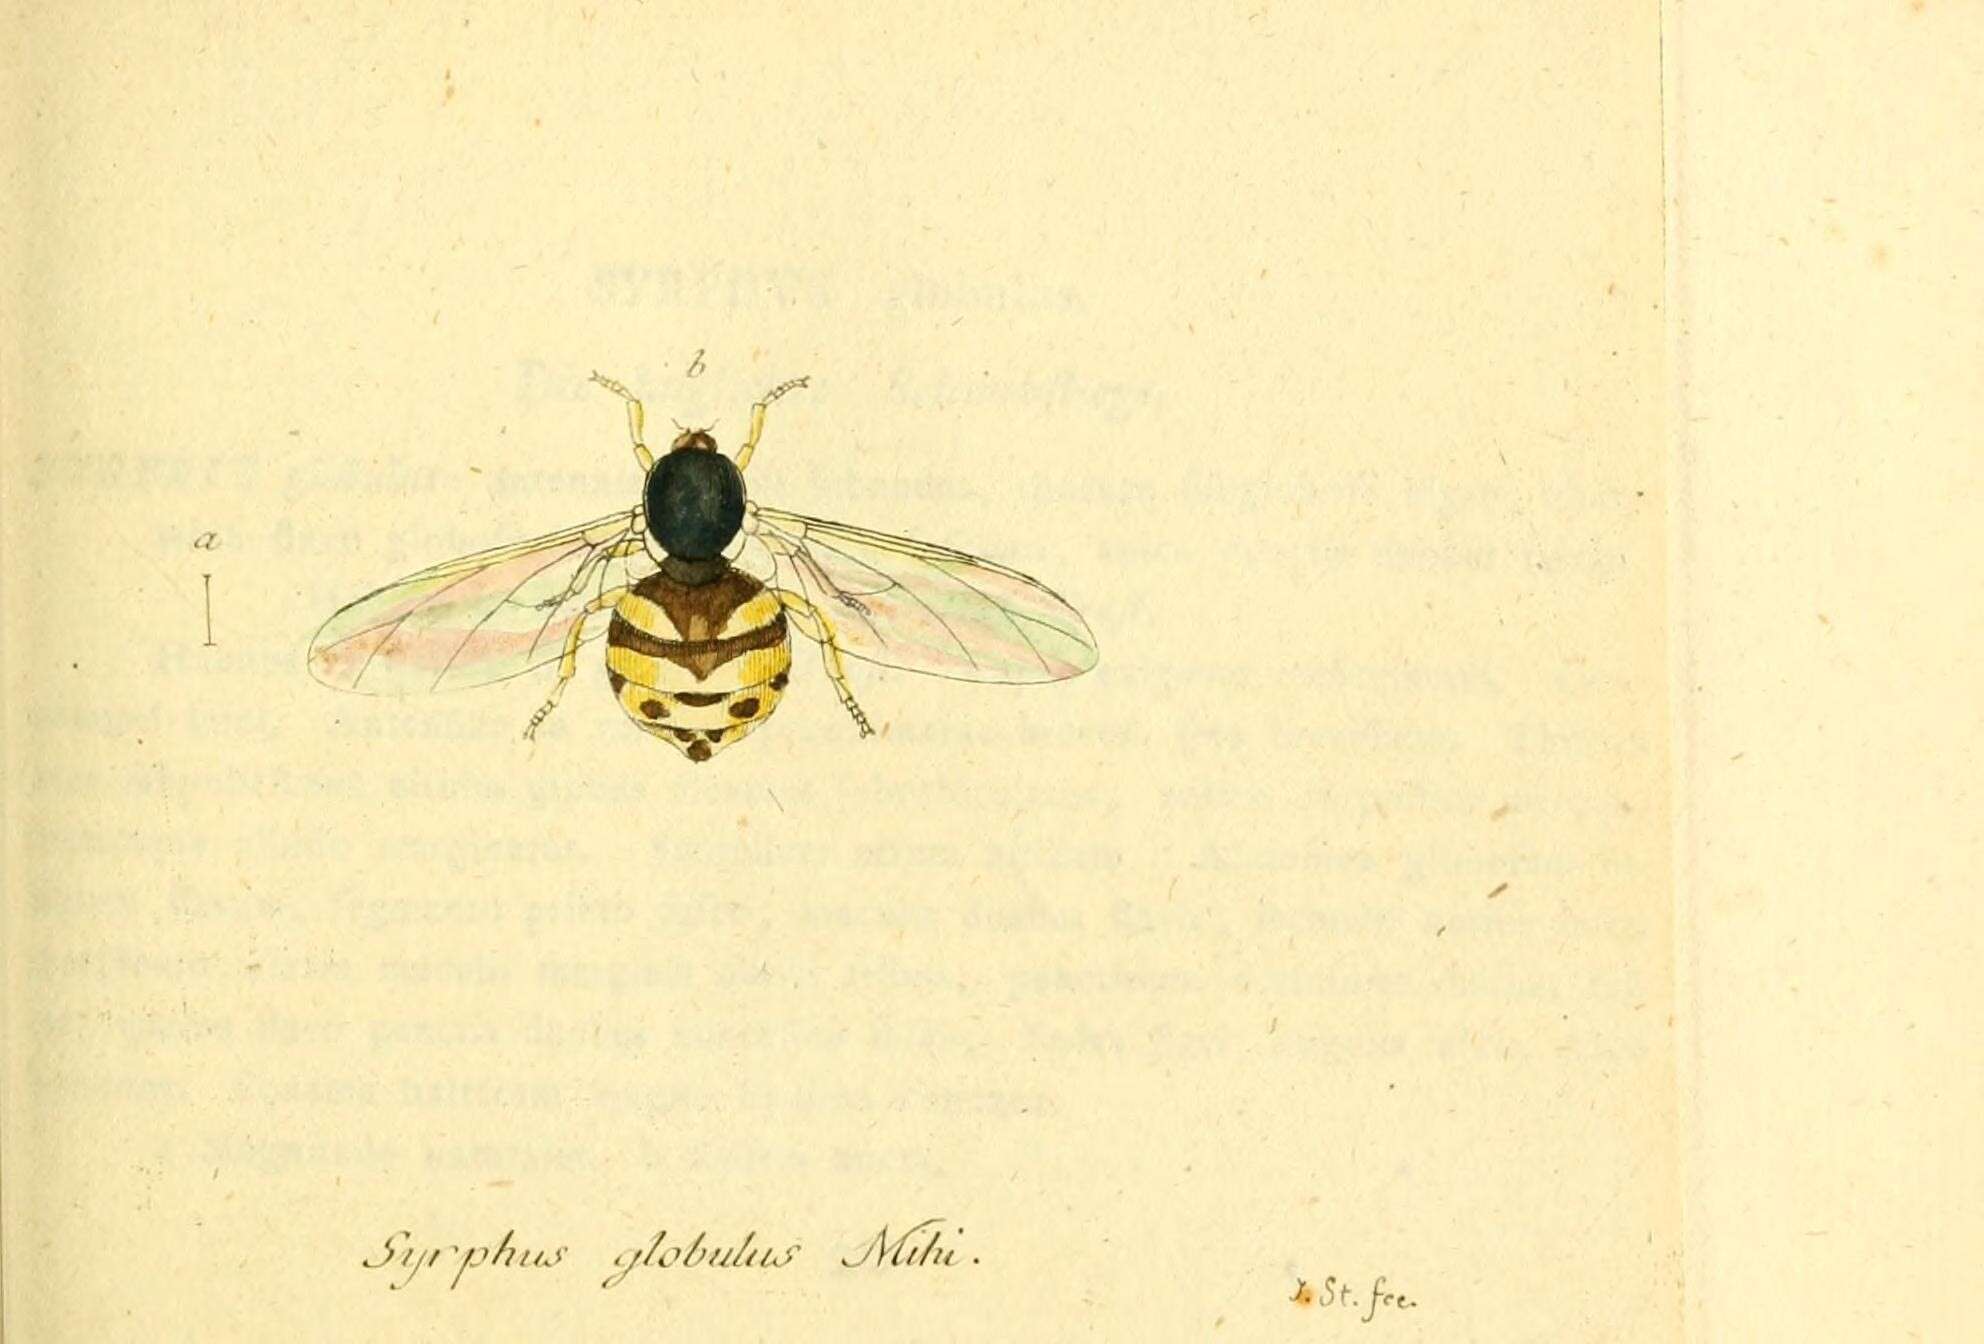 Image de Acrocera orbicula (Fabricius 1787)